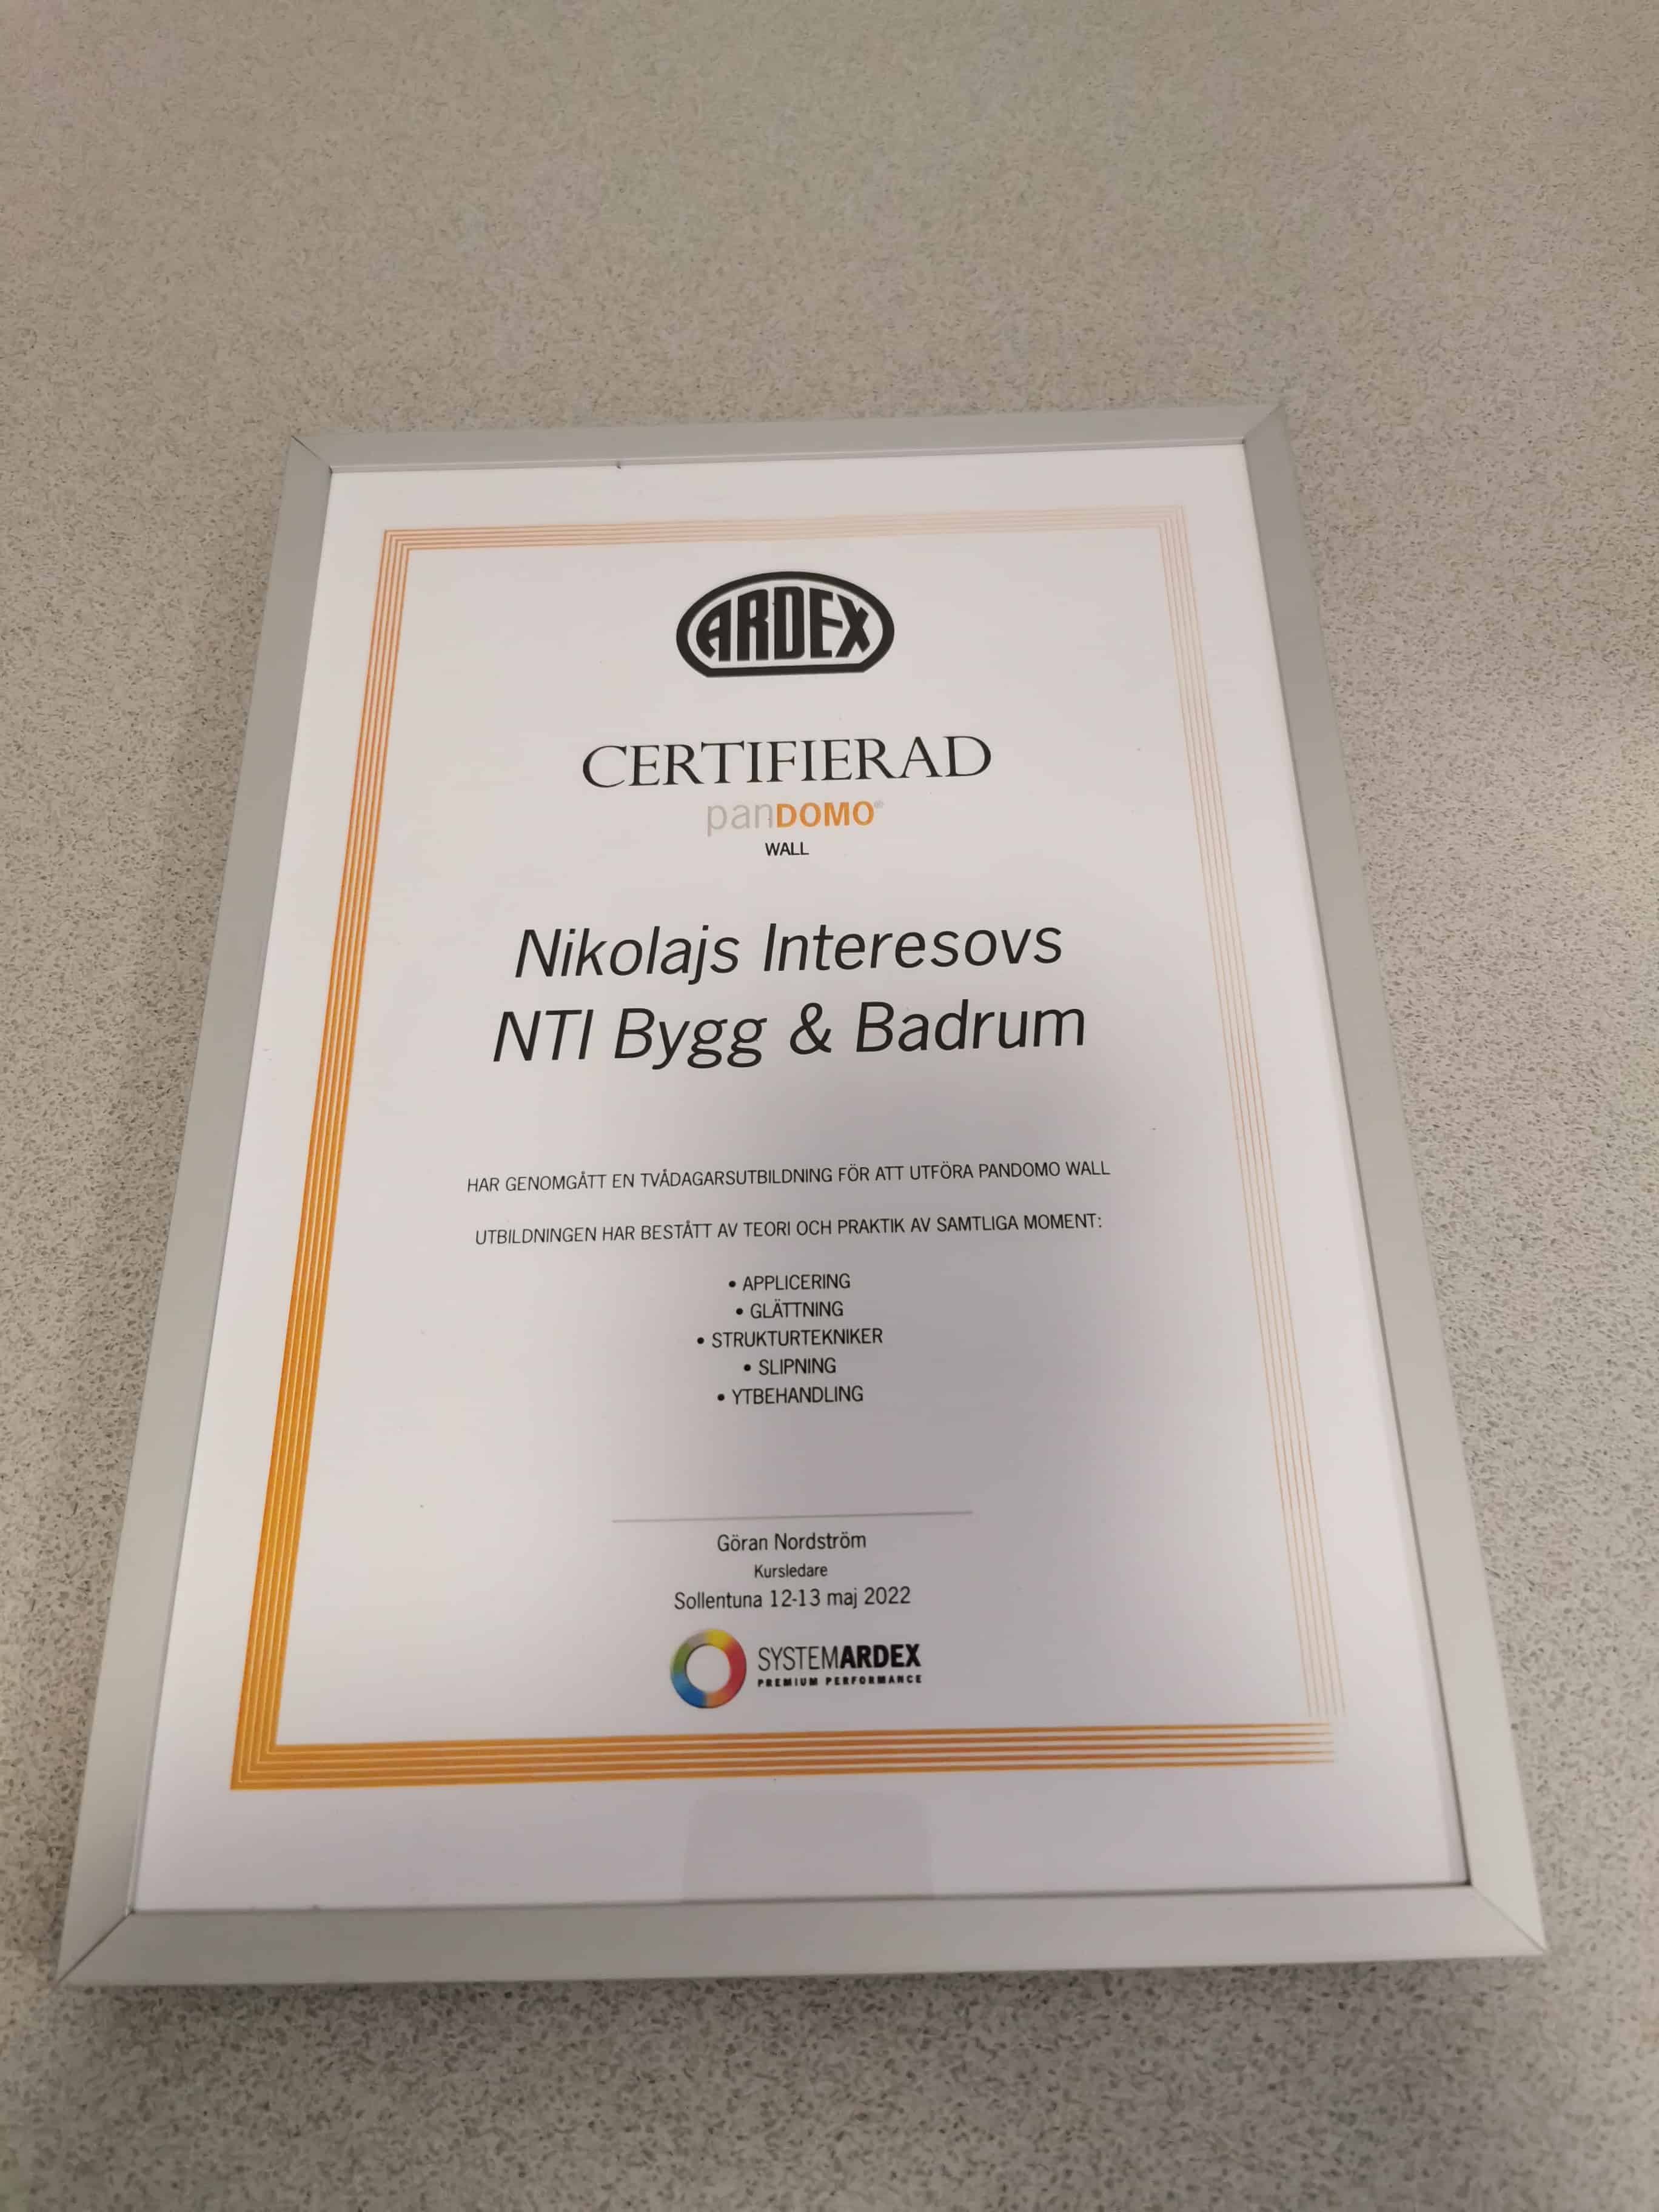 Referensjobb "Certifikat" utfört av NTI BYGG & BADRUM